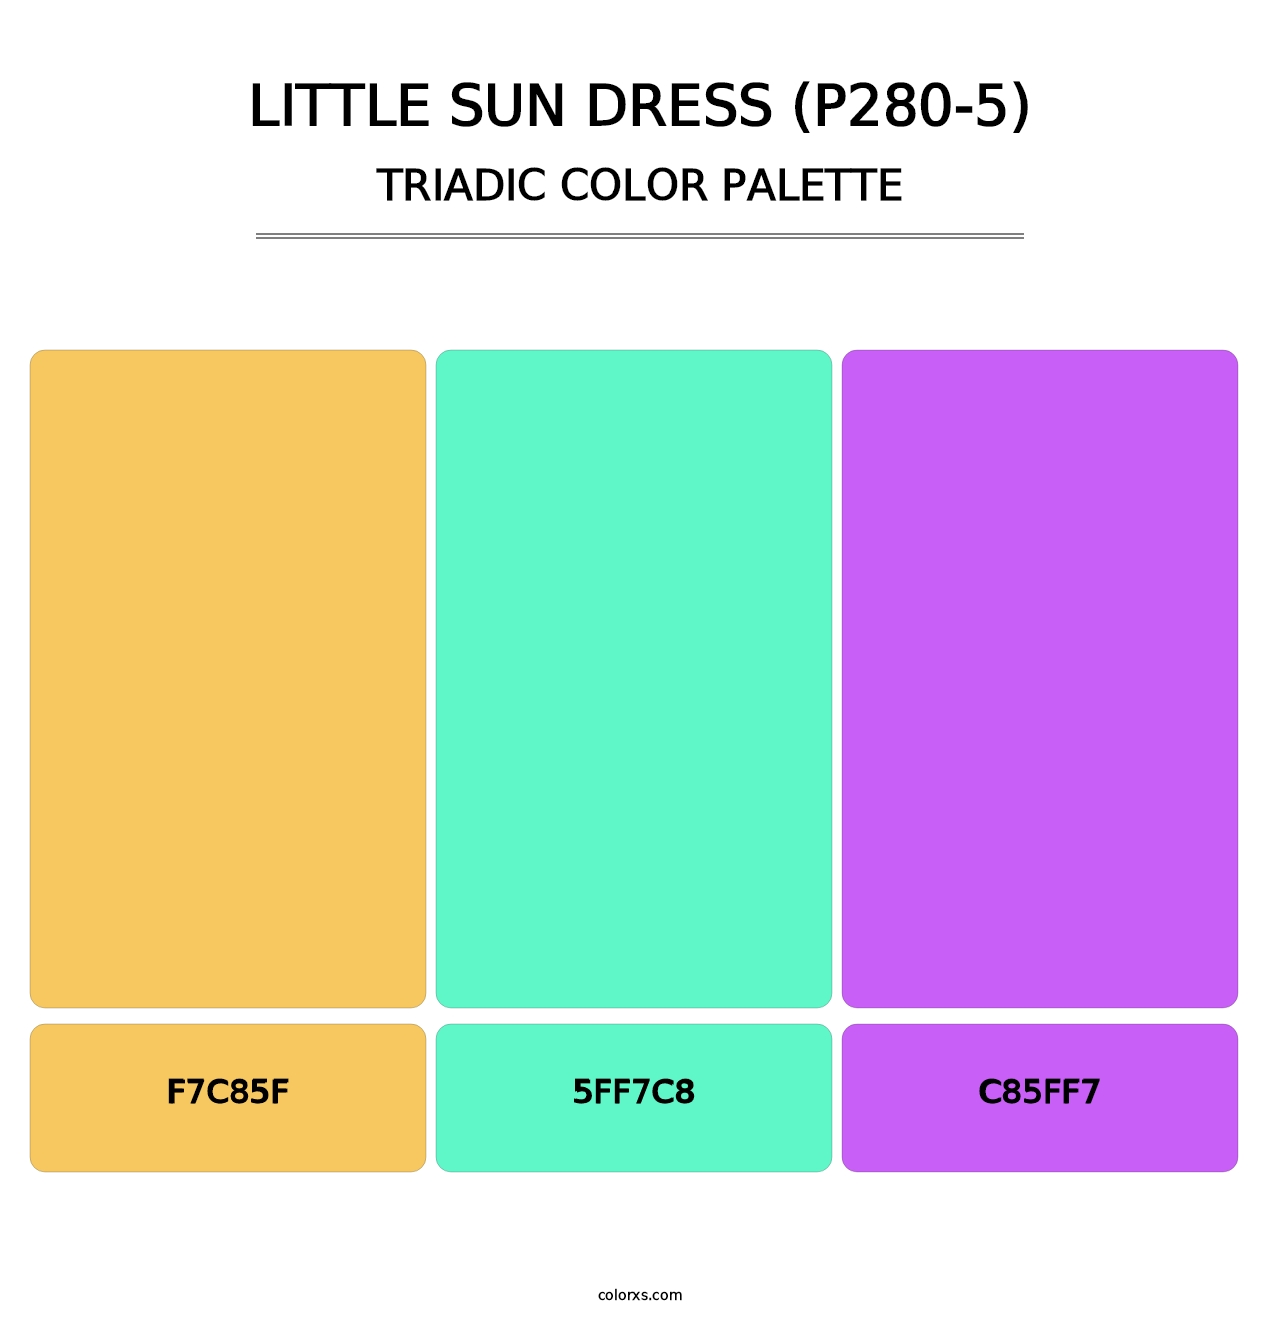 Little Sun Dress (P280-5) - Triadic Color Palette